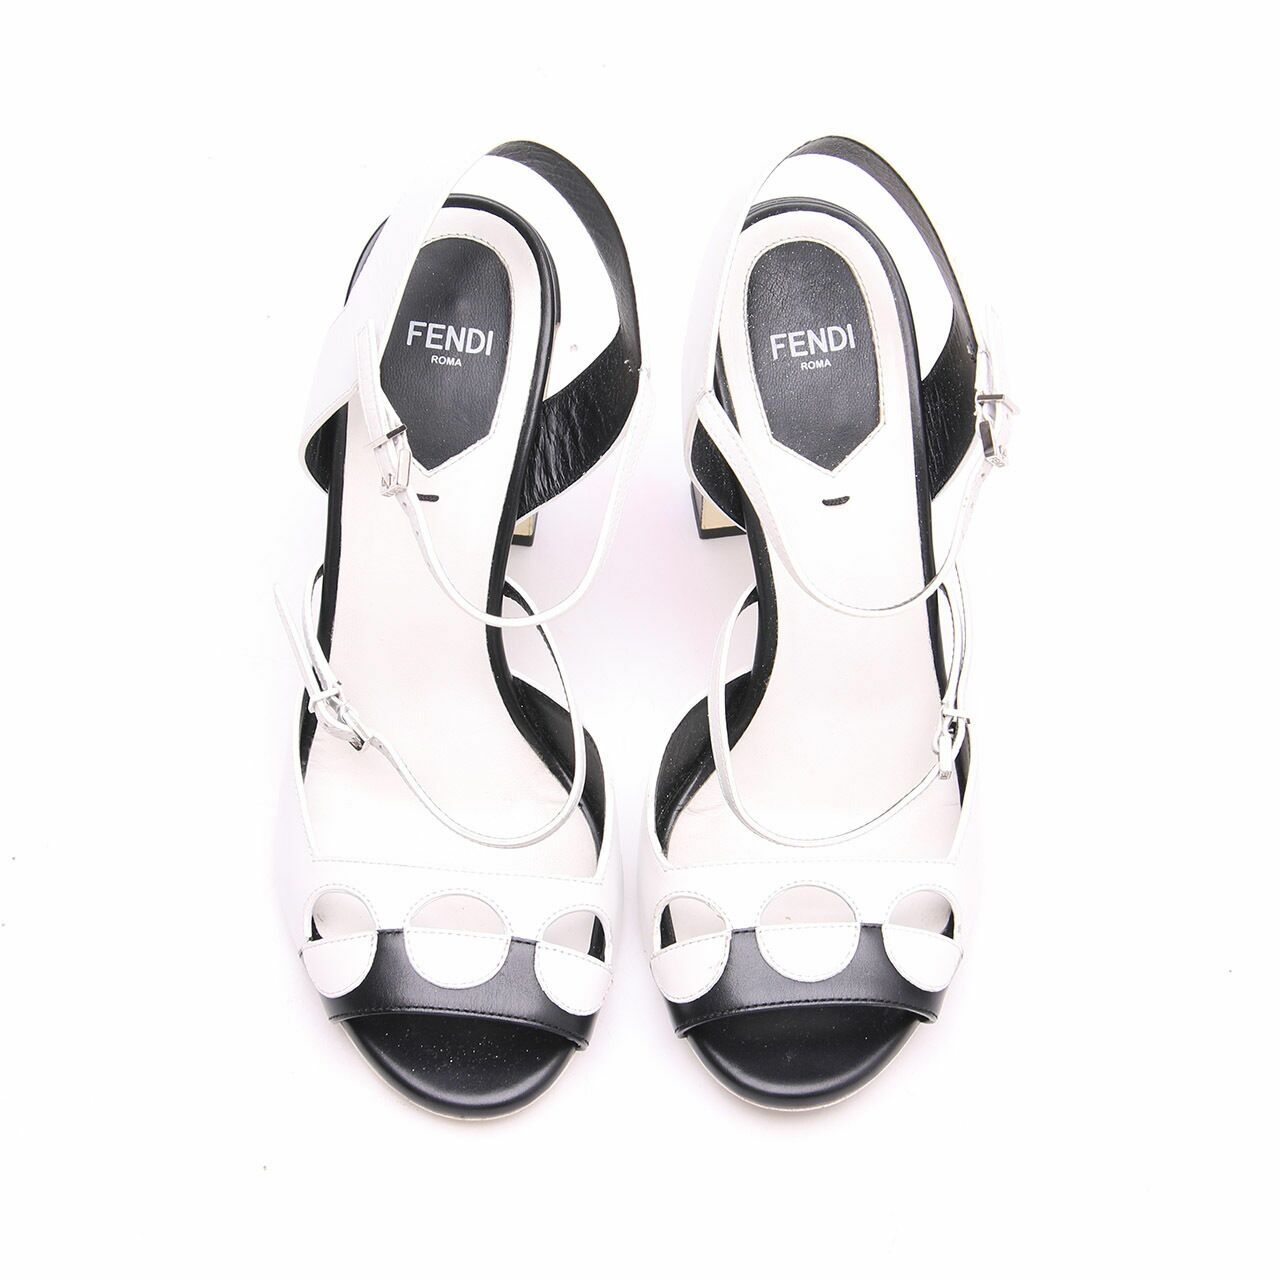 Fendi Bicolor Black & White Polka Dot Heels